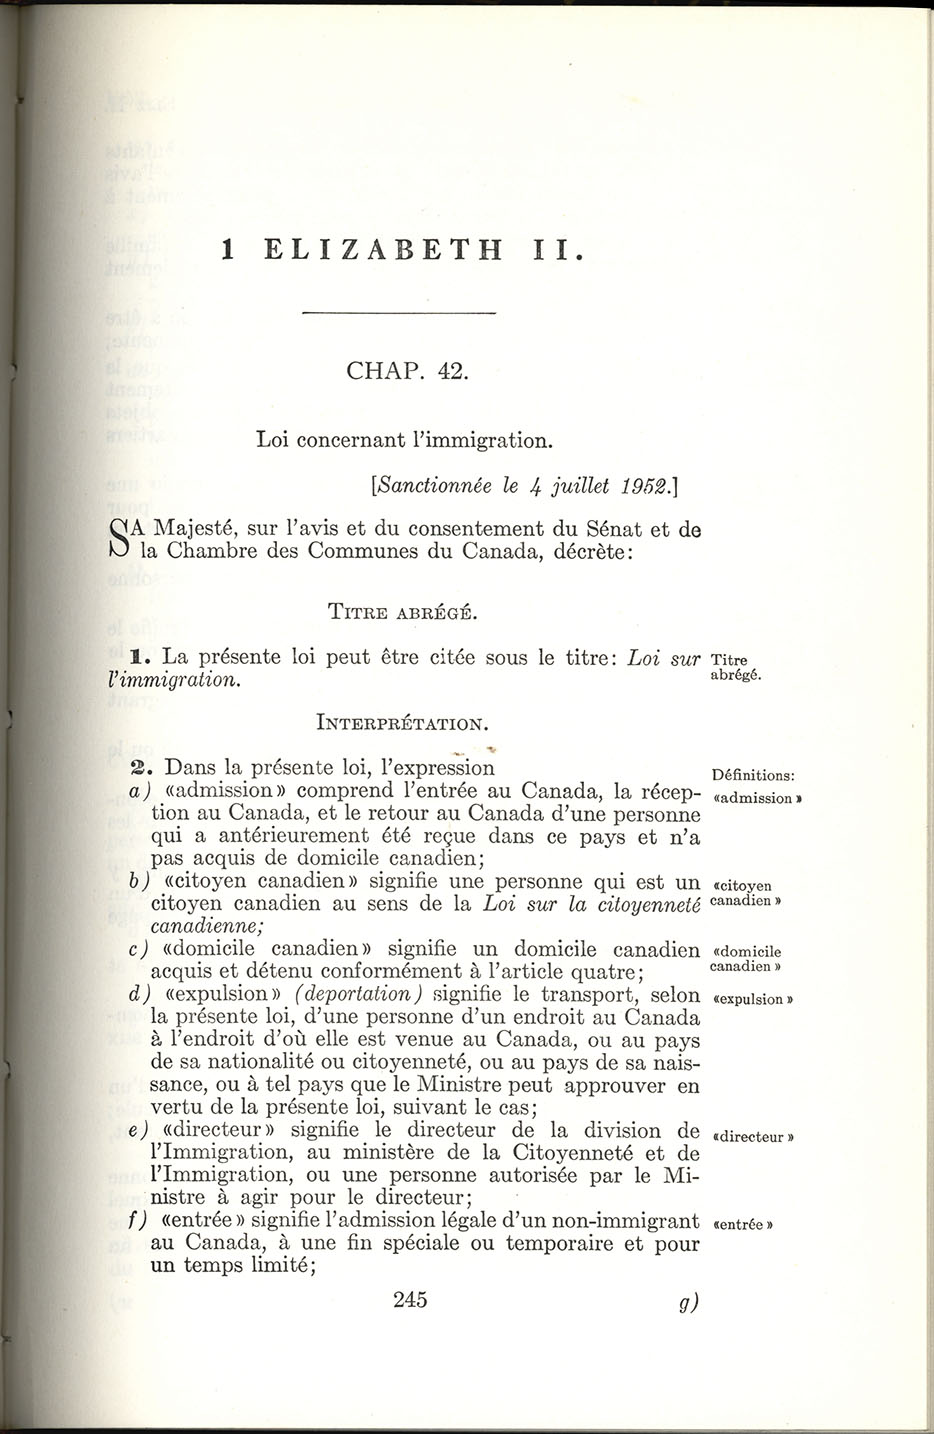 Chap 42 Page 245 Loi sur l’immigration, 1952